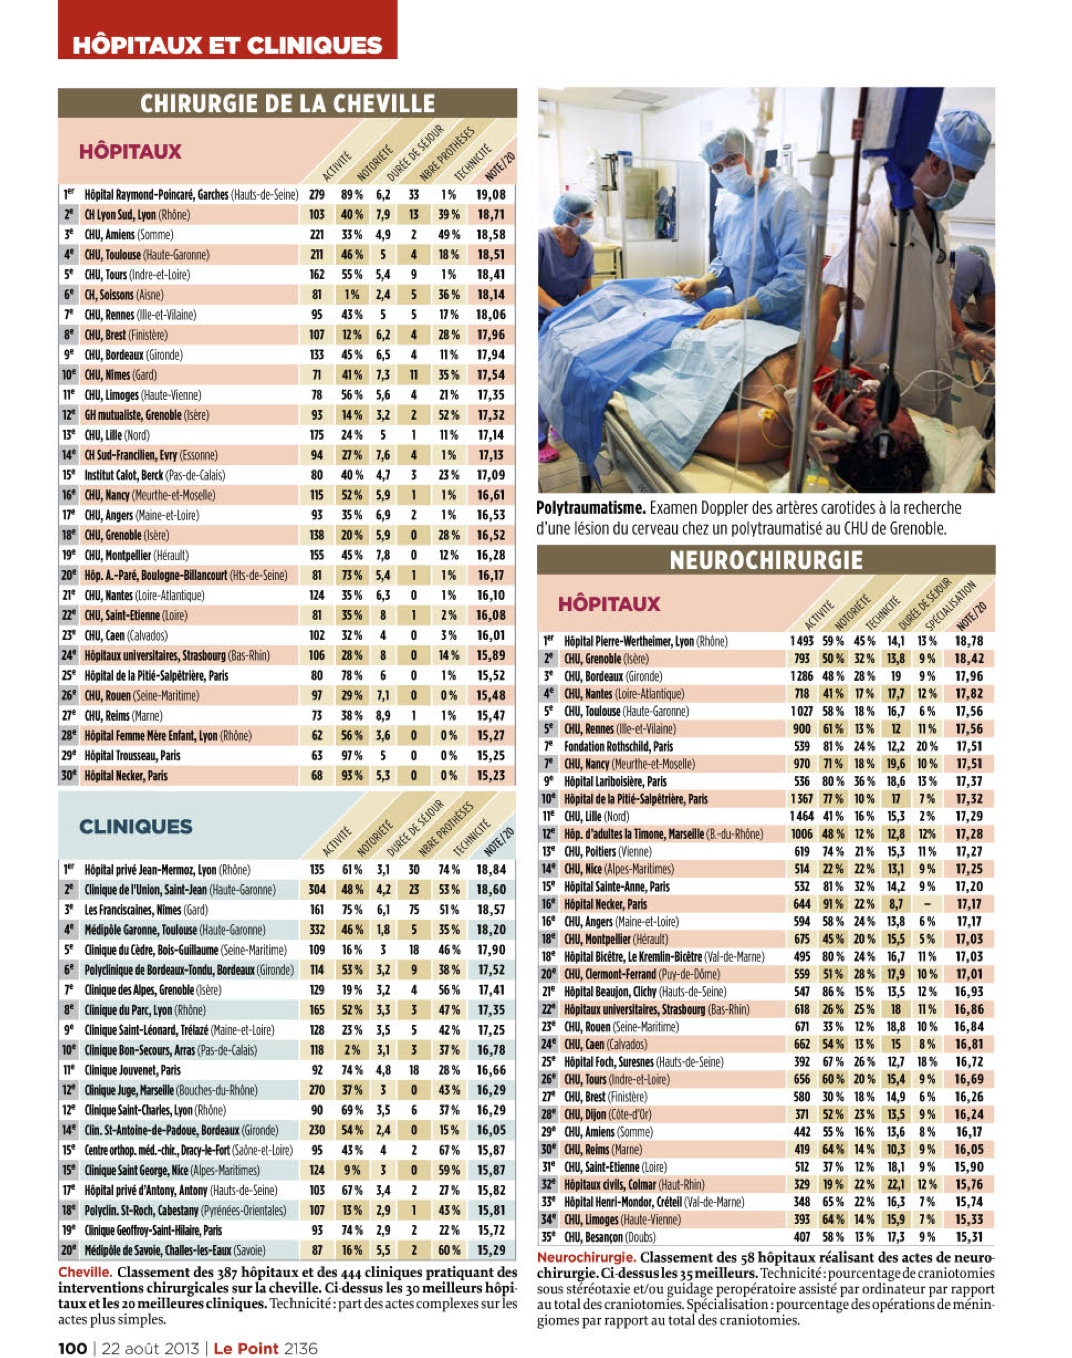 Le Point - Palmarès des Hôpitaux 2013 : Clinique Geoffroy Saint Hilaire numéro 1 en Ile de France et numéro 9 en France pour la Chirurgie du Pied!